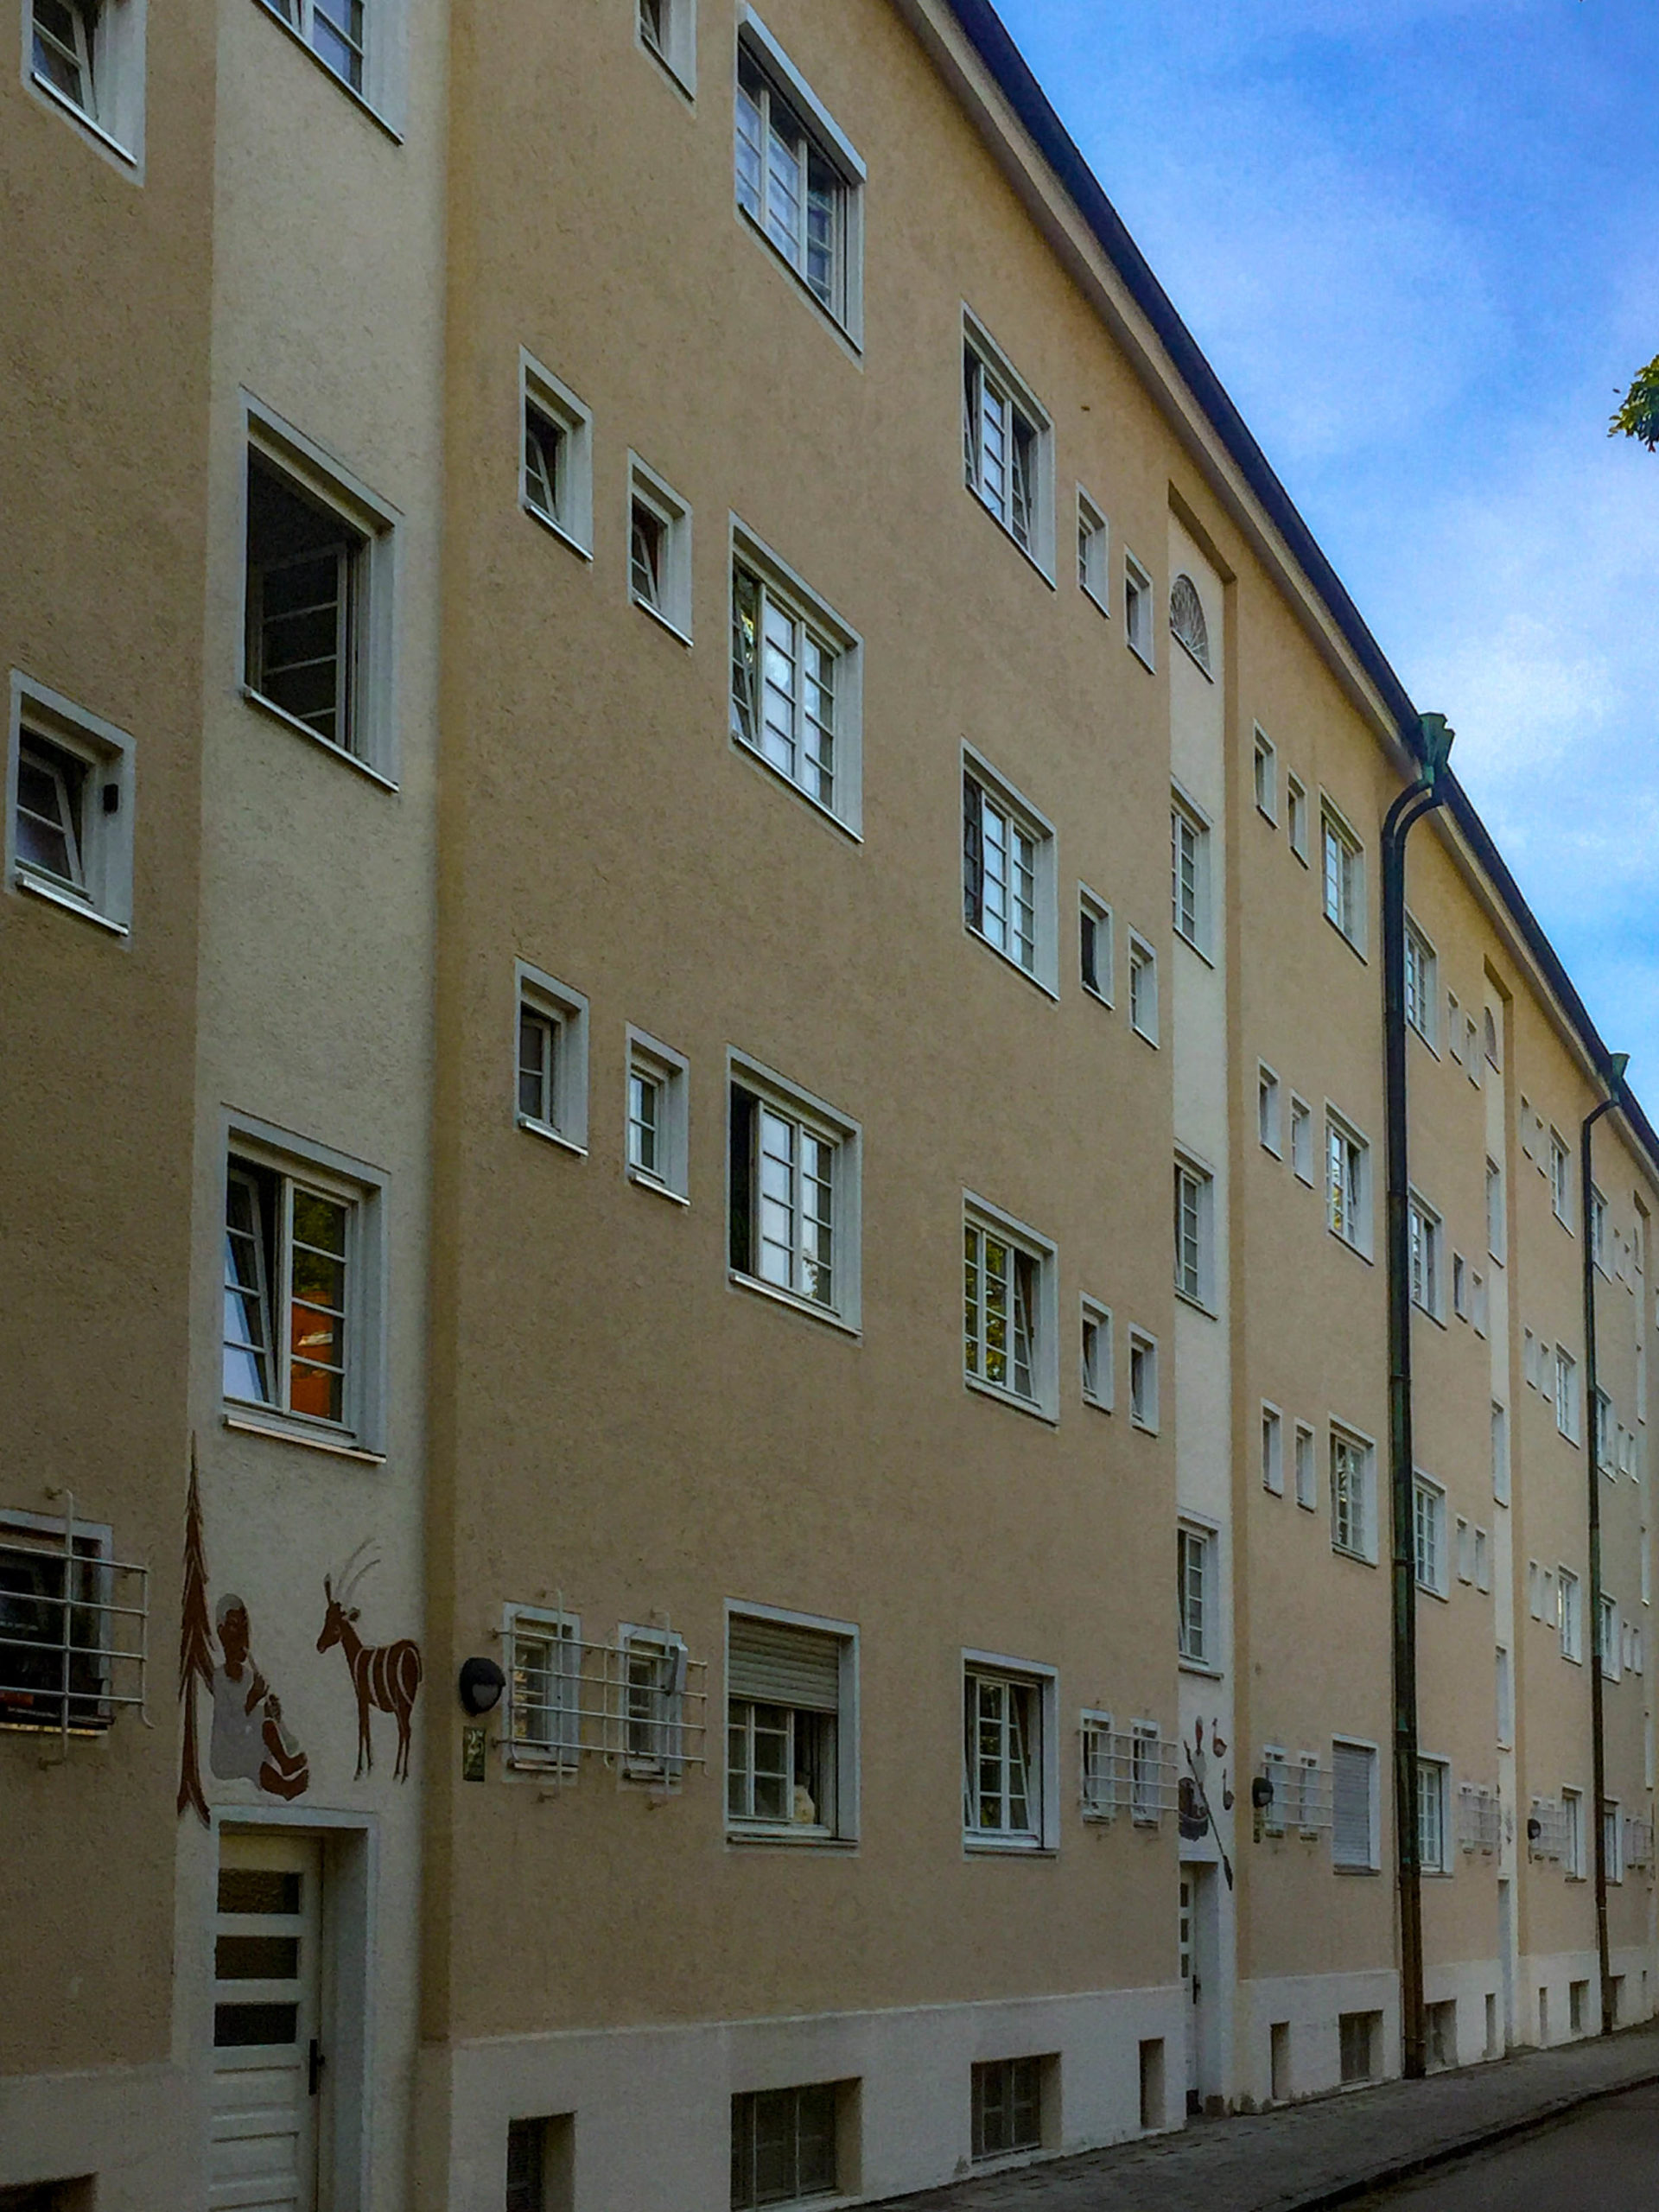 Siedlung am Walchenseeplatz, 1927-1930. Architekten: Carl Jäger, Hanna Löv u.a ©Daniela Christmann